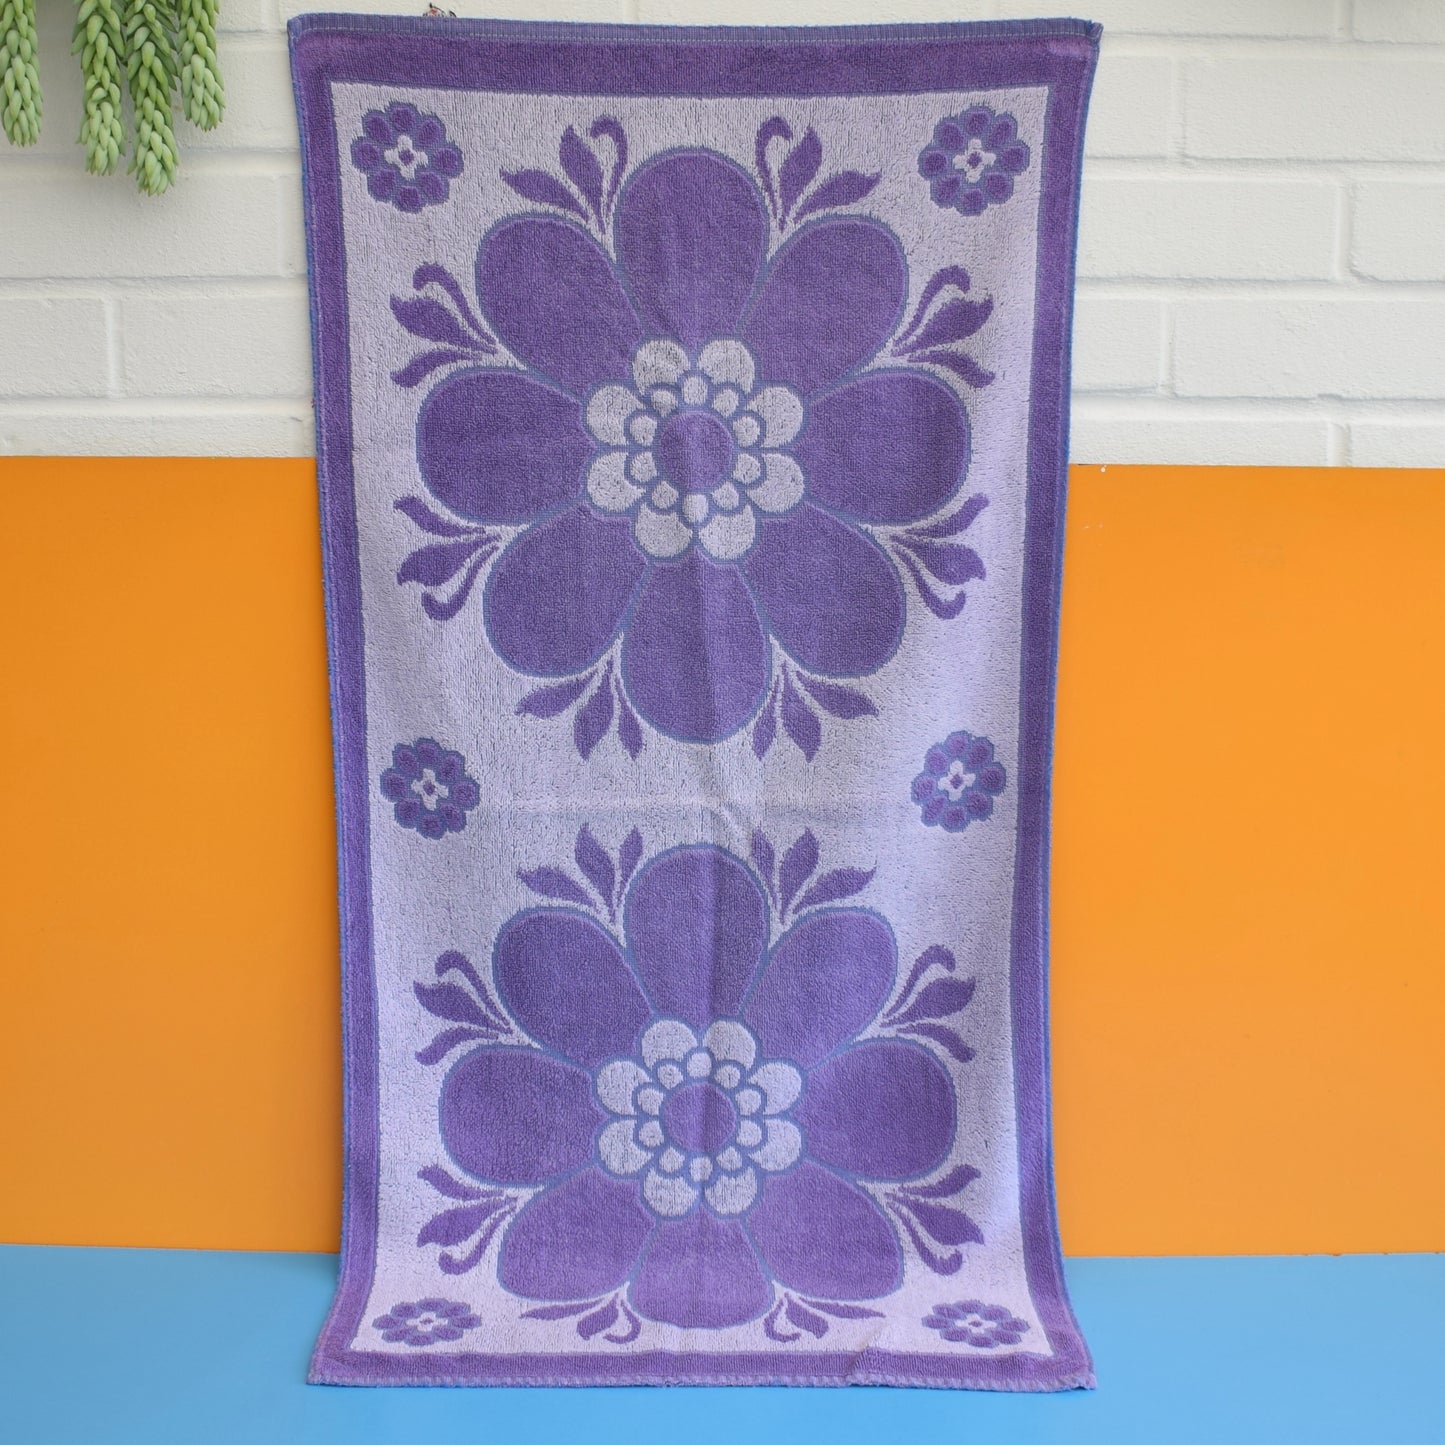 Vintage 1960s Cotton Bath Towel - Purple Flower